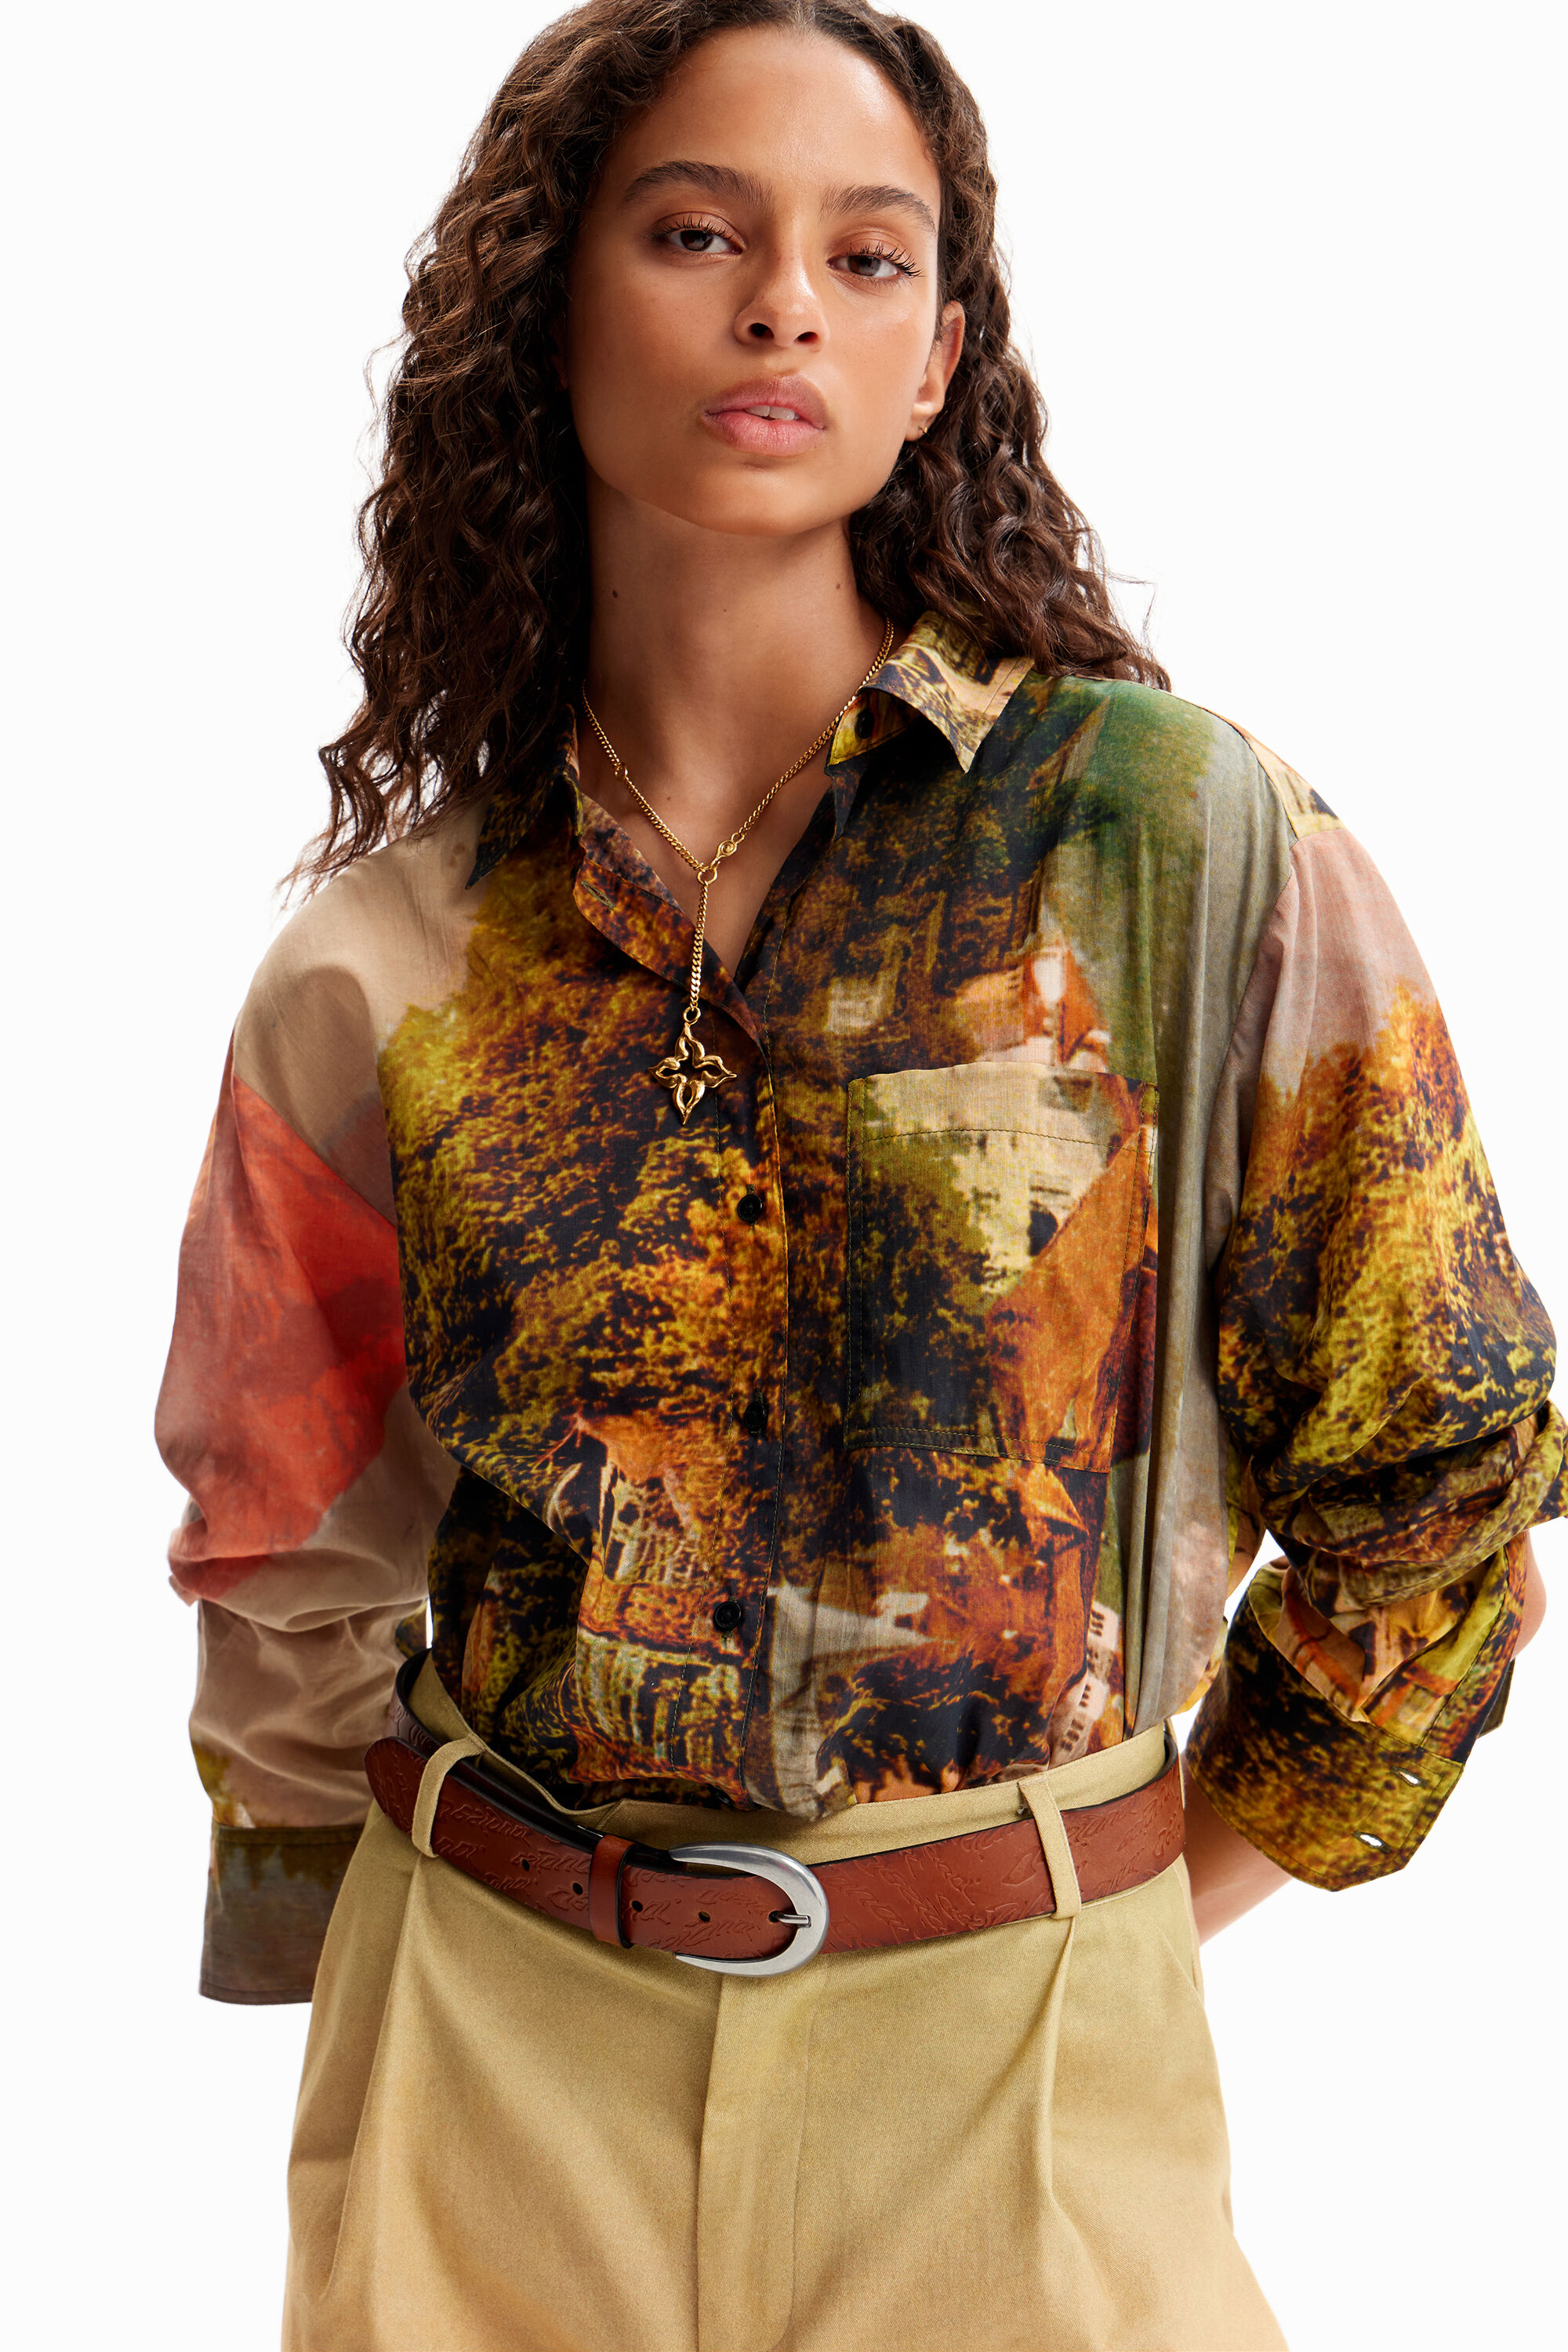 Desigual M. Christian Lacroix landscape shirt